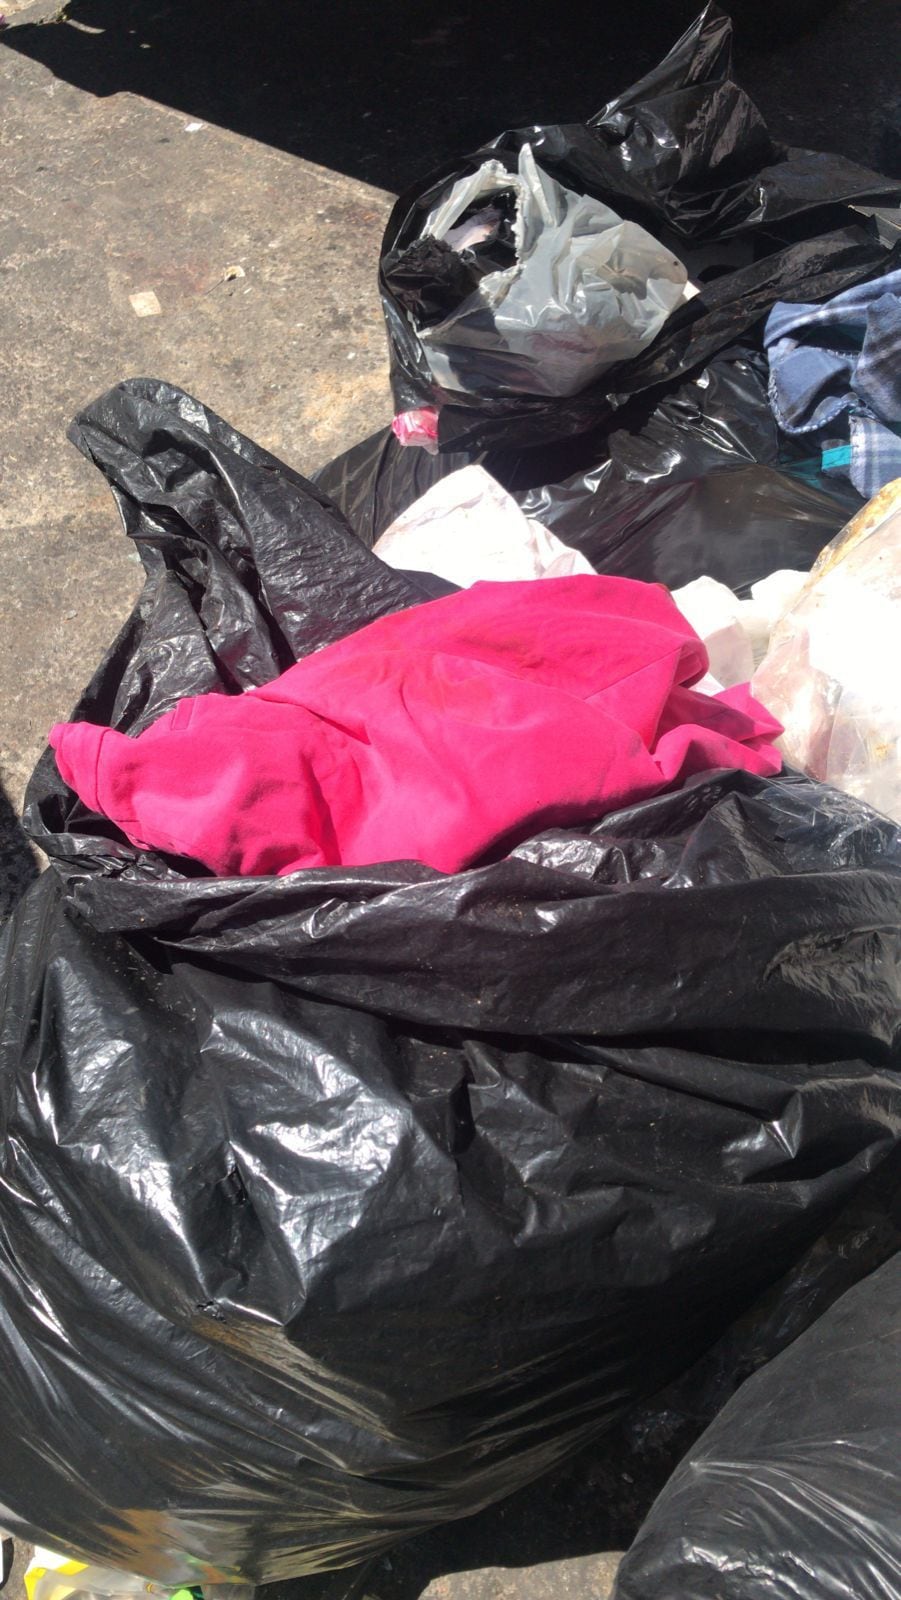 hallazgo de un feto dentro de una bolsa de basura. Esto en Av 4, Calle 8, San José. El hallazgo lo hace un habitante de calle, quien da aviso a las autoridades. Foto: PM